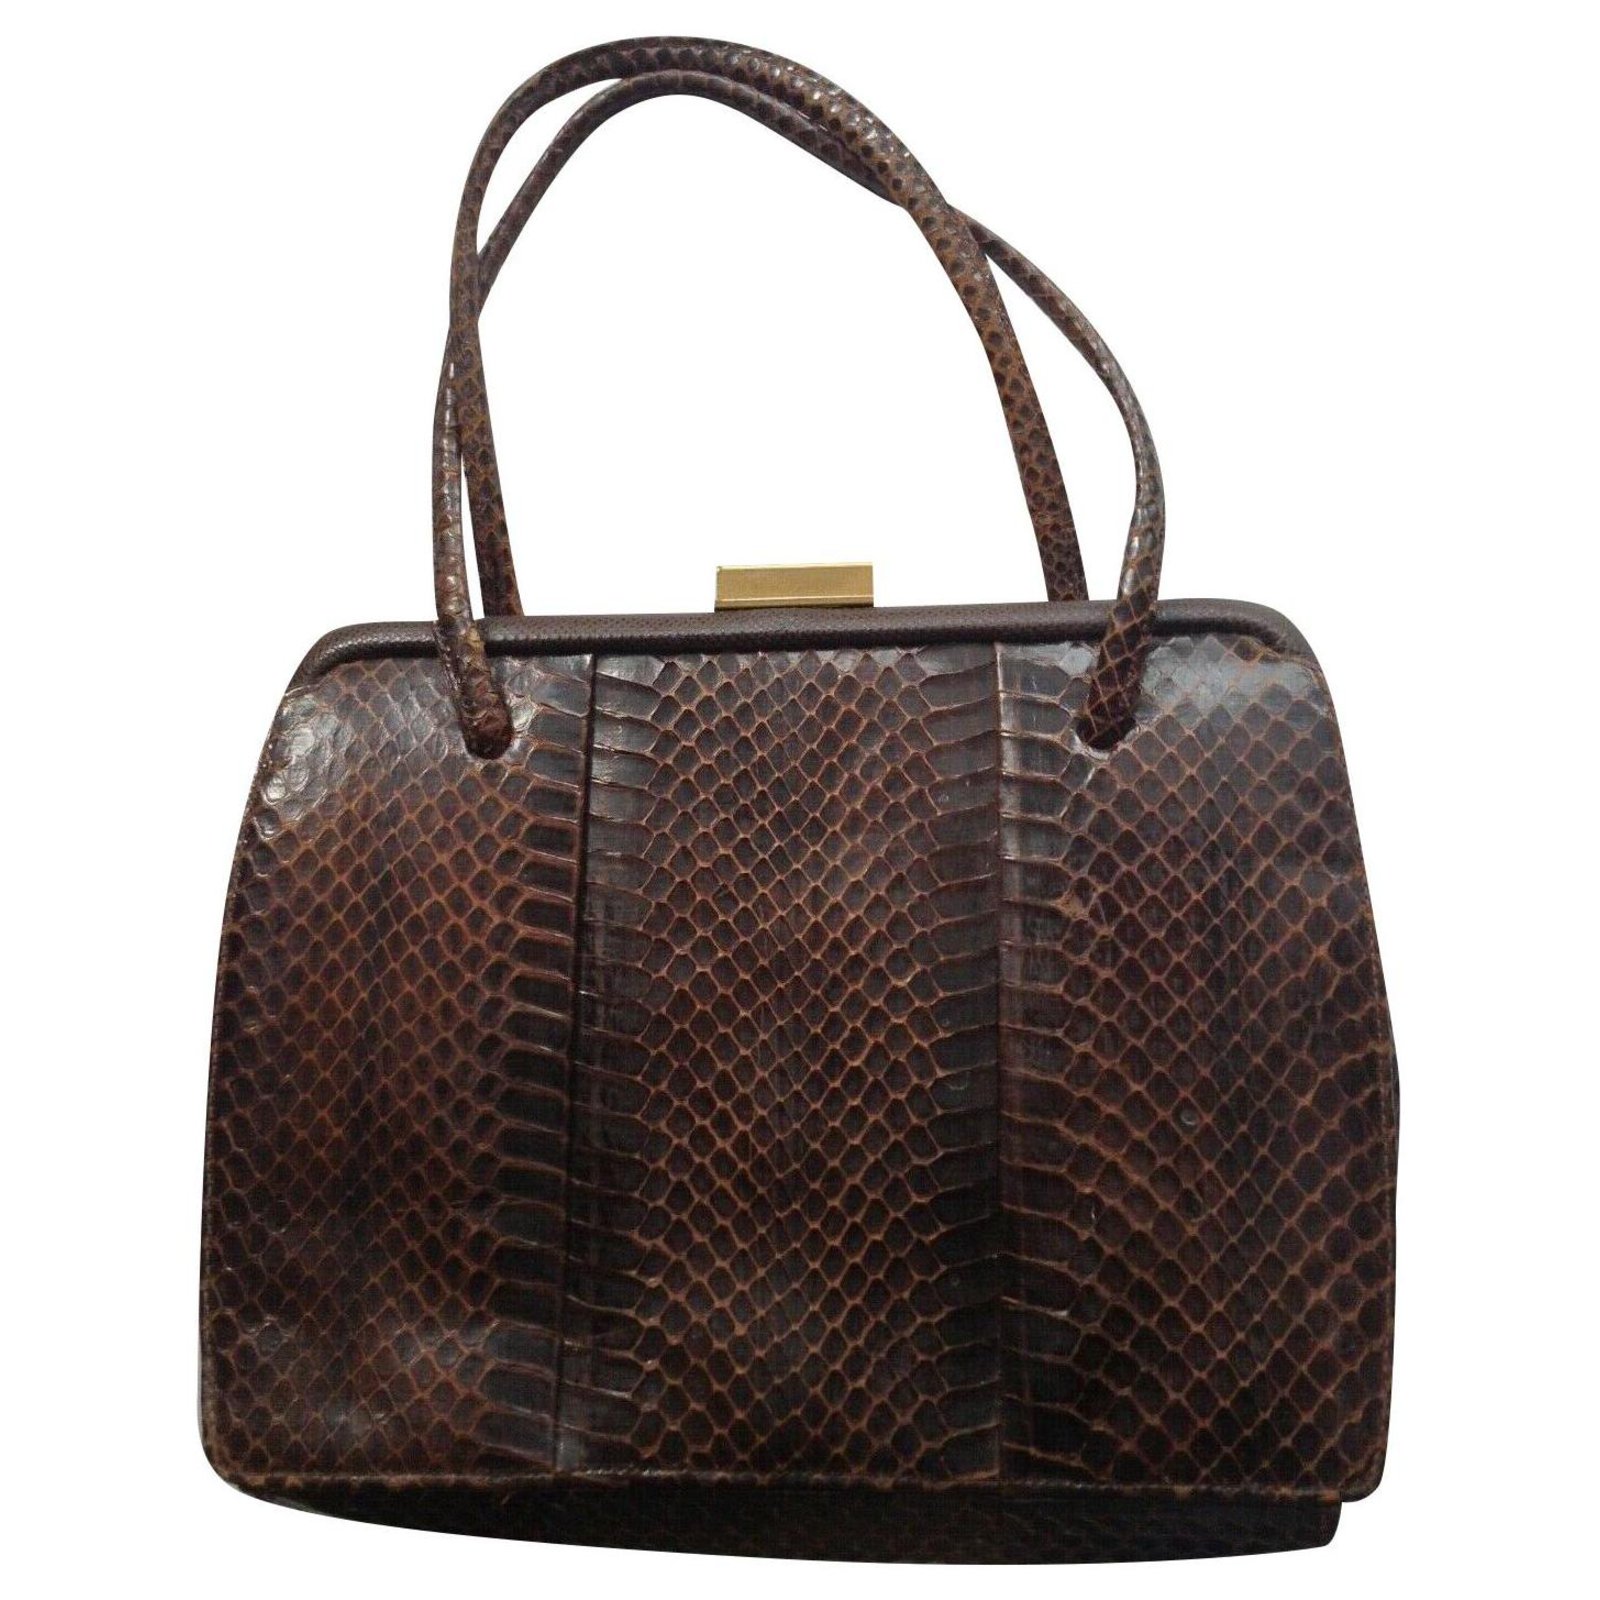 Bags by Supreme Vintage RARE Snakeskin Handbag Patchwork Purse Pocketbook  11x8 | eBay